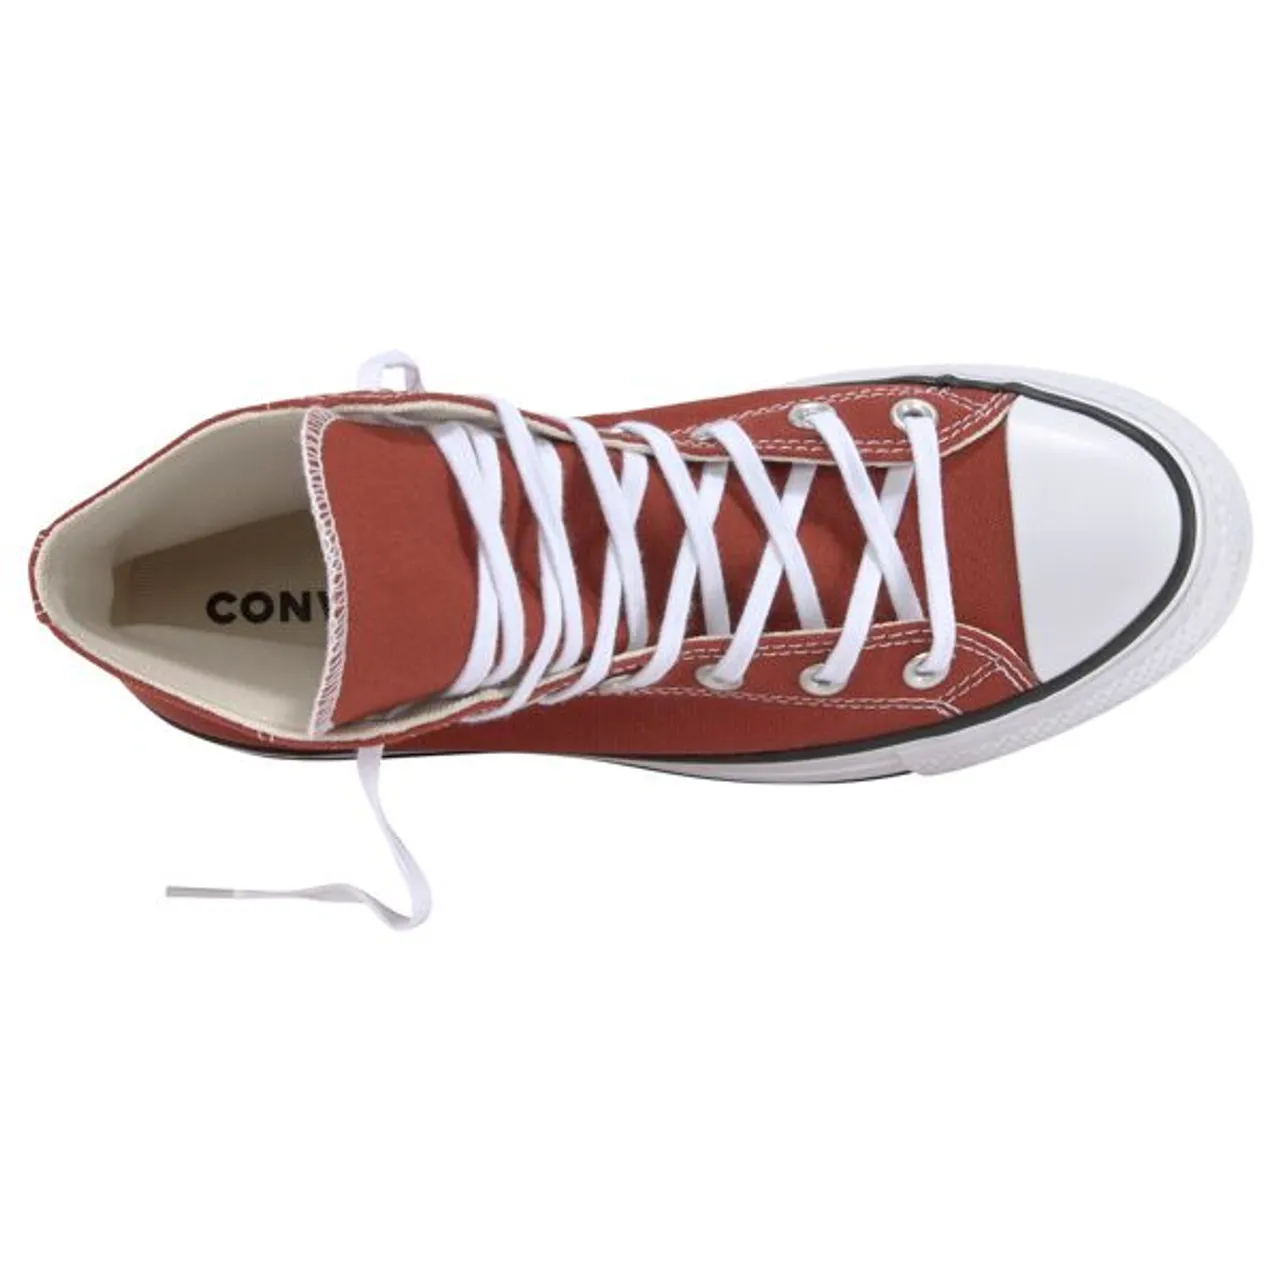 Sneaker CONVERSE "CHUCK TAYLOR ALL STAR LIFT PLATFORM" Gr. 37,5, rot (rotbraun) Schuhe Jungen